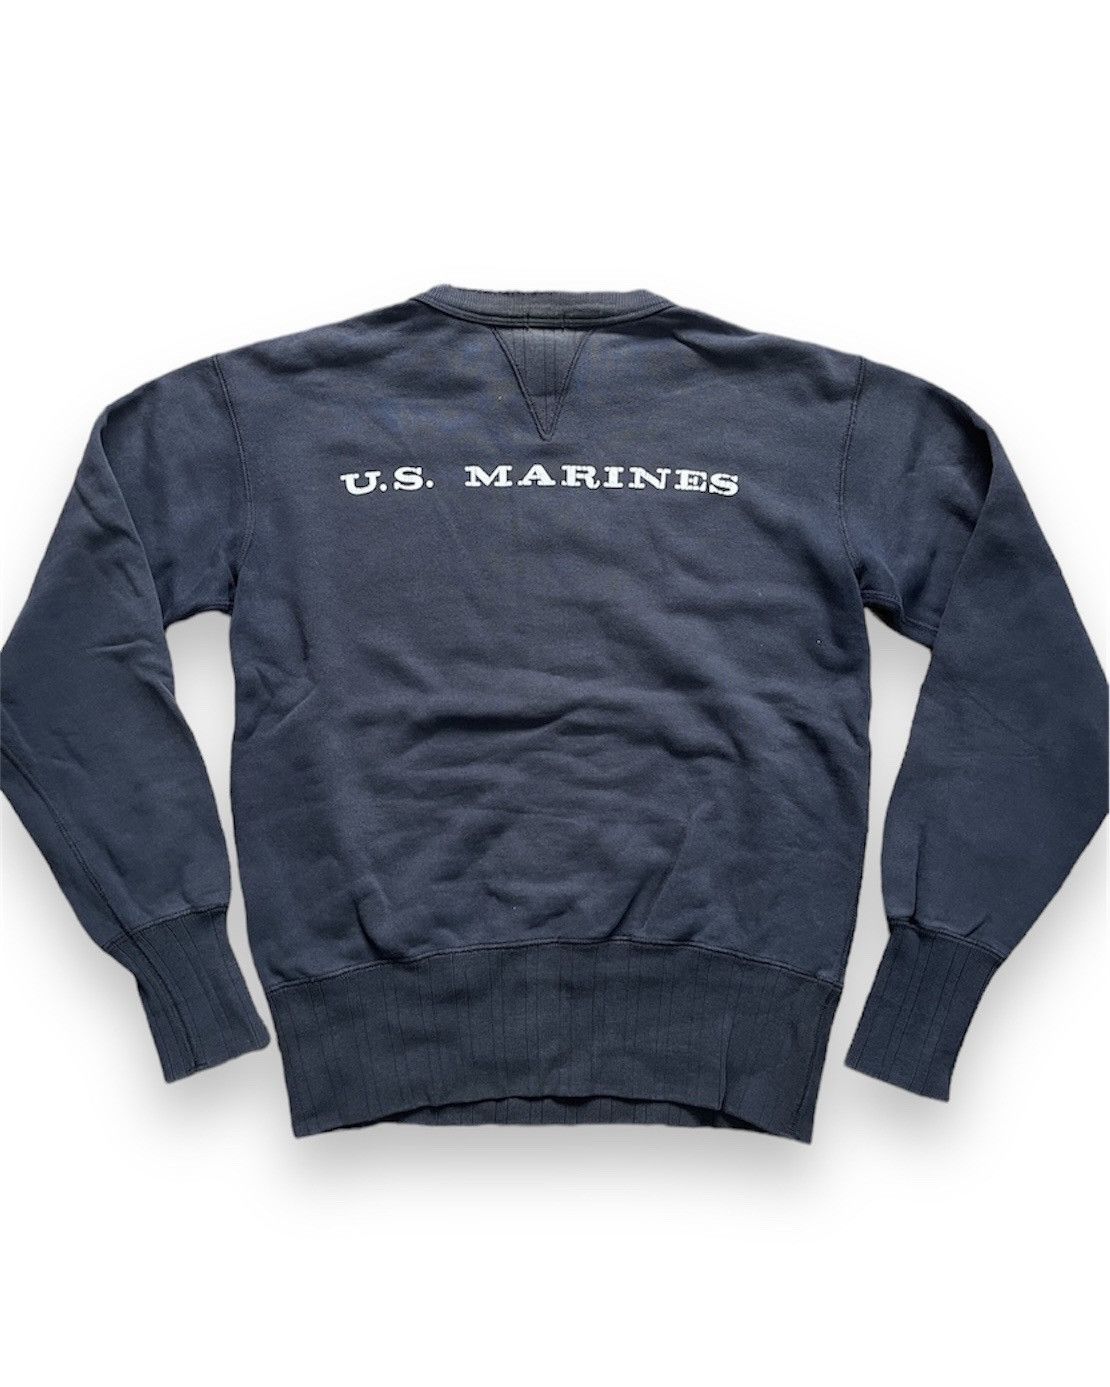 Vintage 1970s USMC Sweater US Marines Sportswear - 2